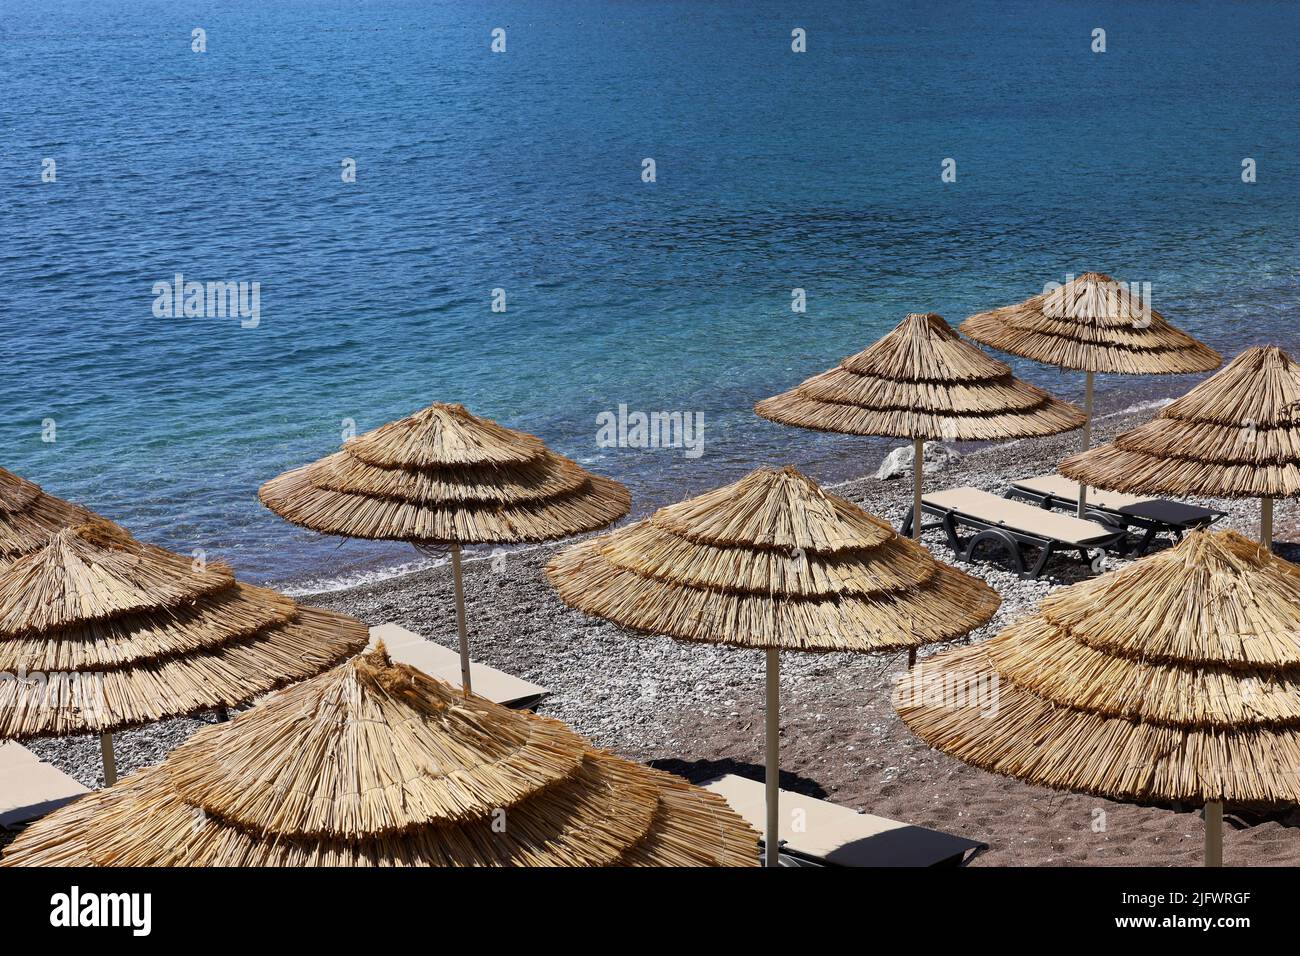 Plage de galets vide avec parasols en osier et chaises longues. Vue pittoresque sur la mer bleue, station balnéaire luxueuse Banque D'Images